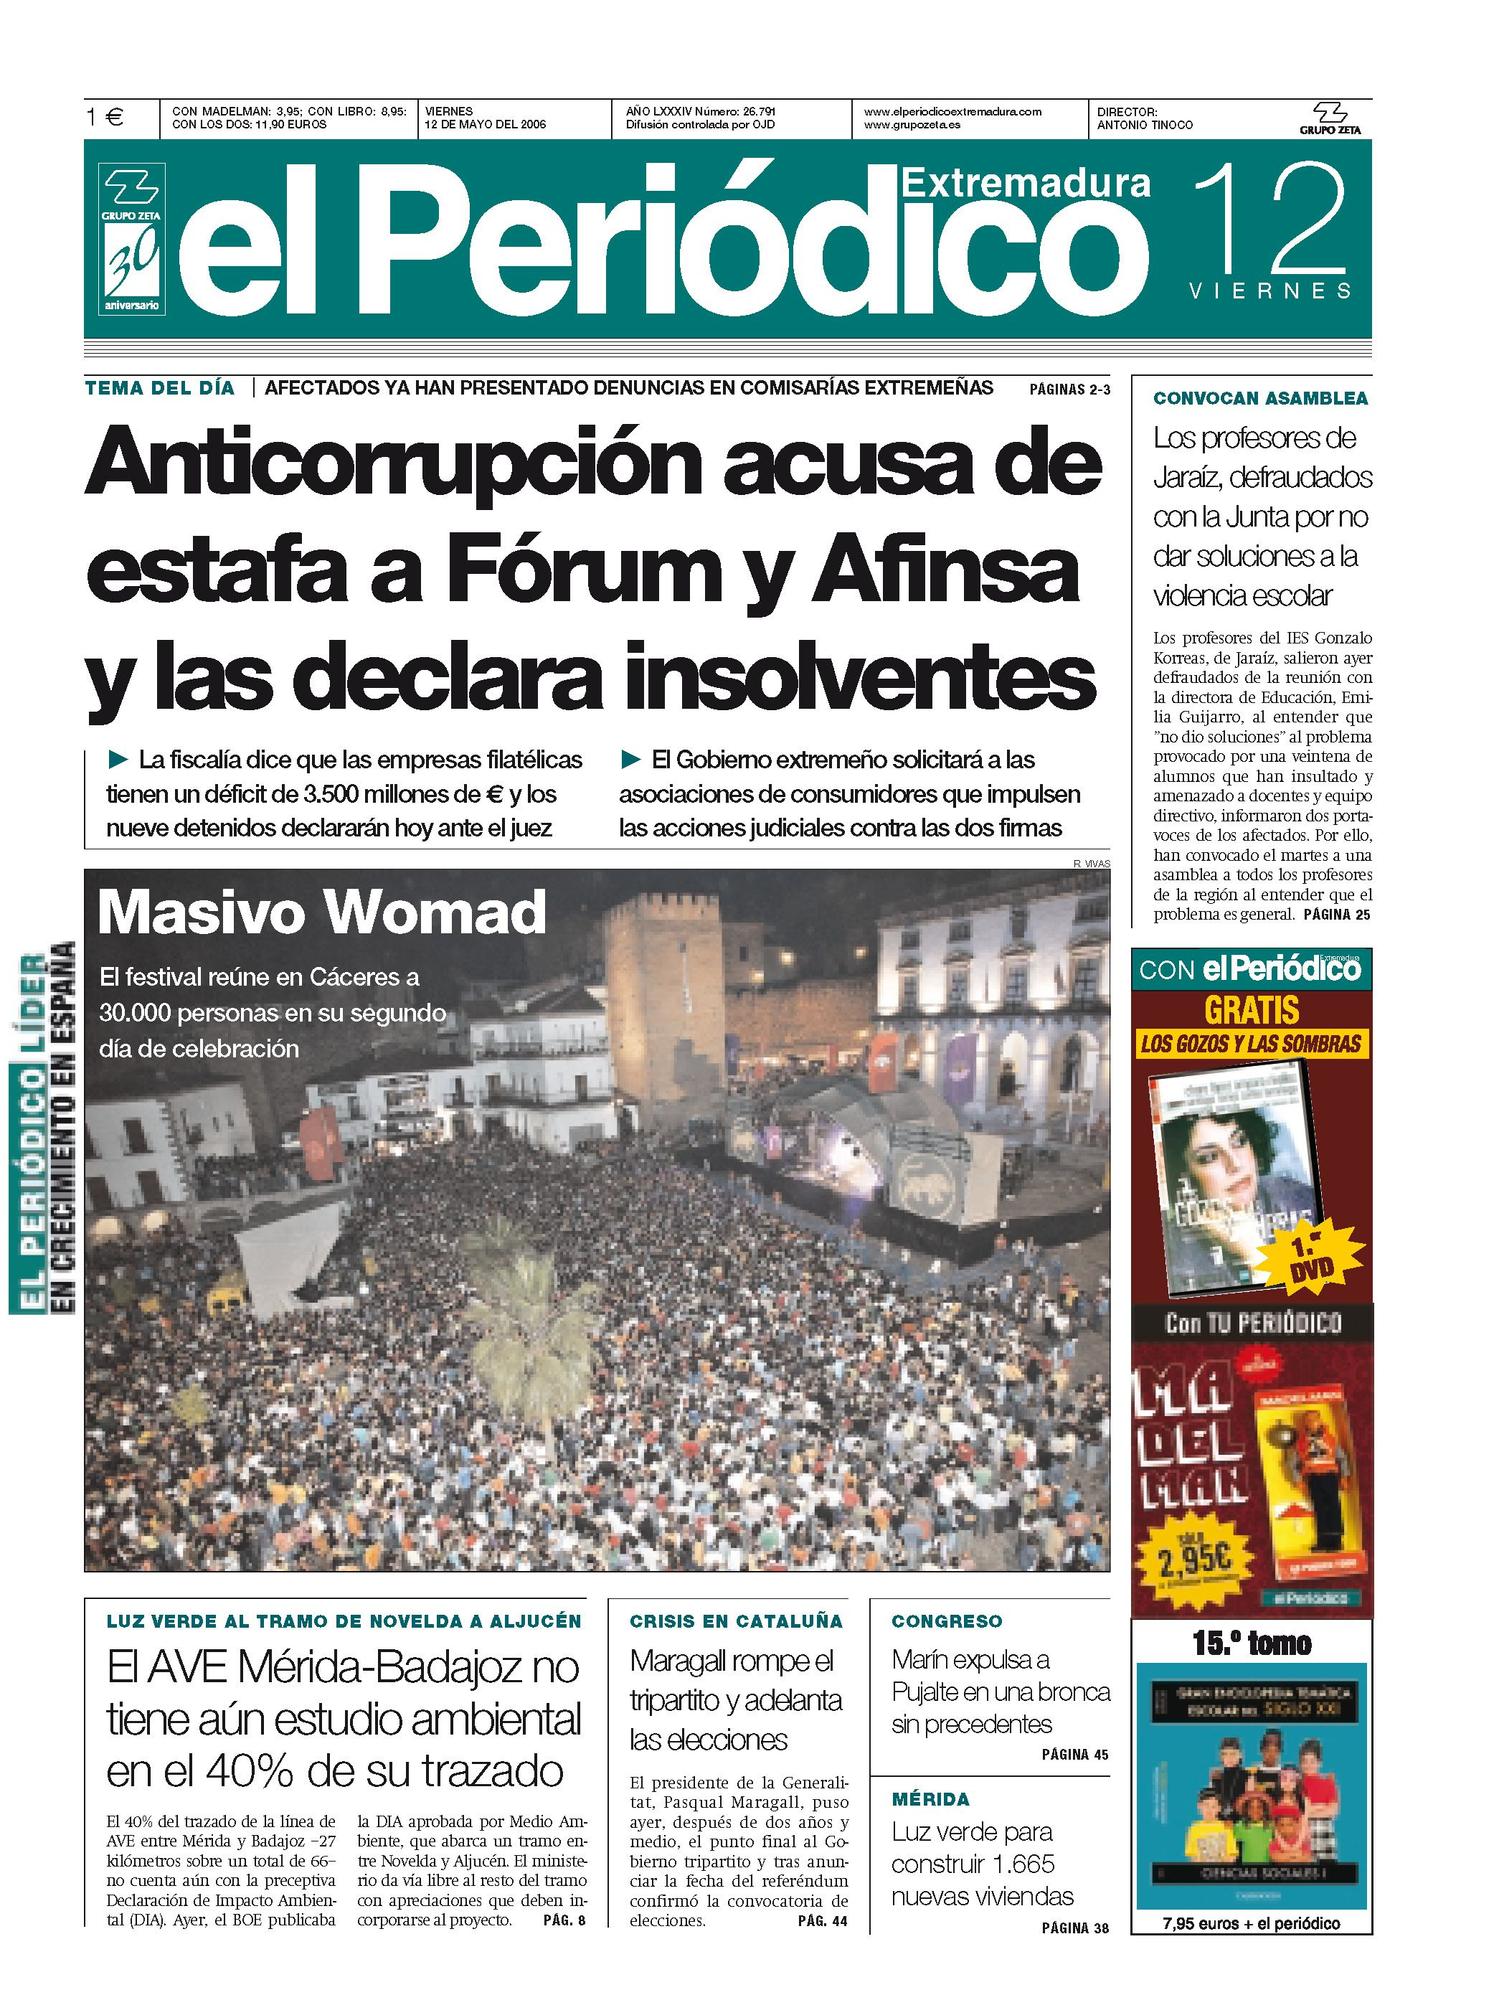 Portada de El Periódico Extremadura el 12 de mayo de 2006.